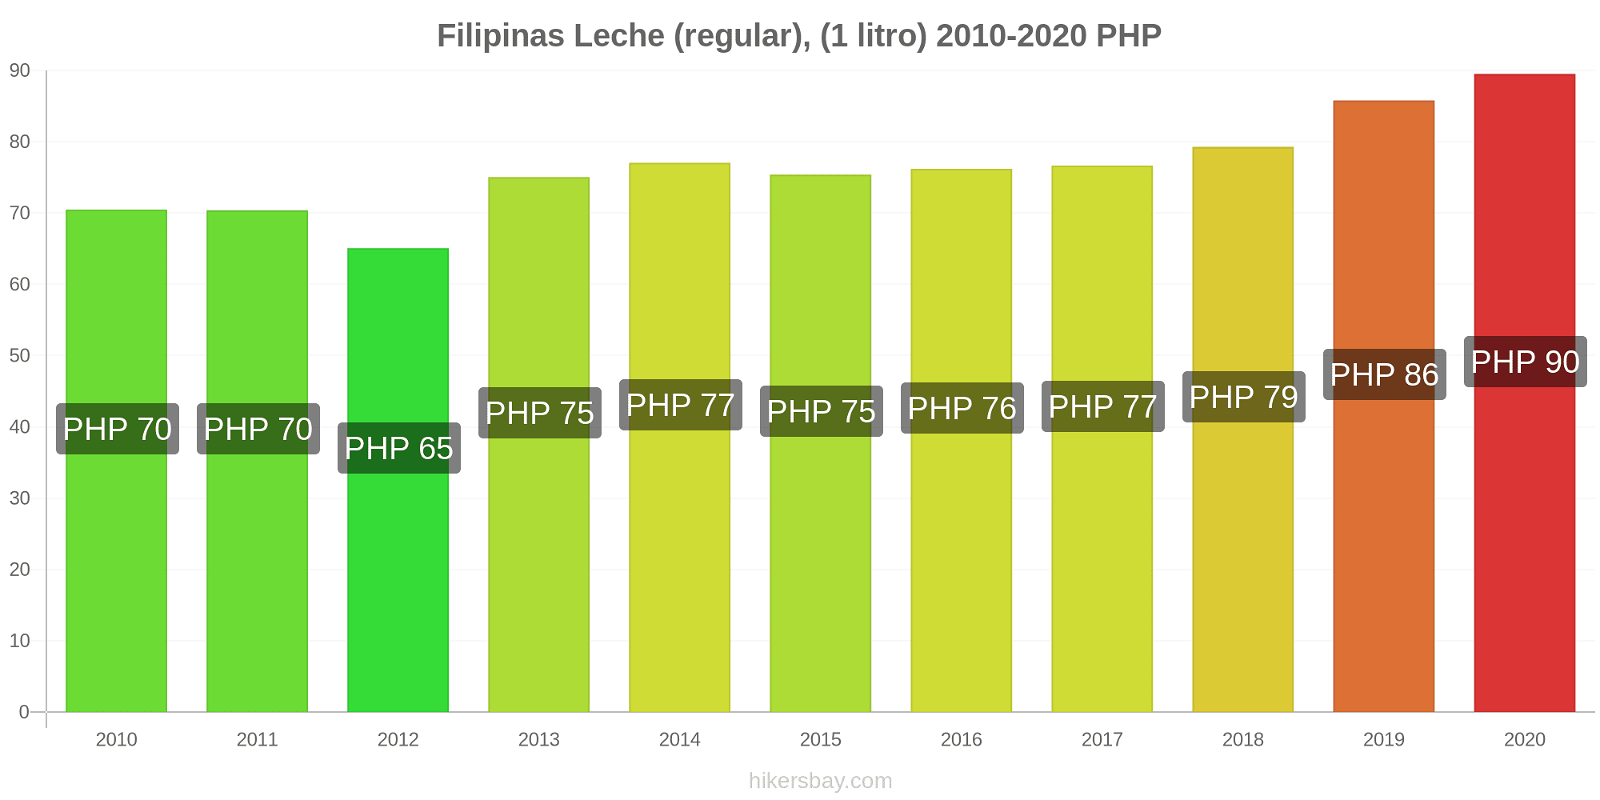 Filipinas cambios de precios Leche (Regular), (1 litro) hikersbay.com